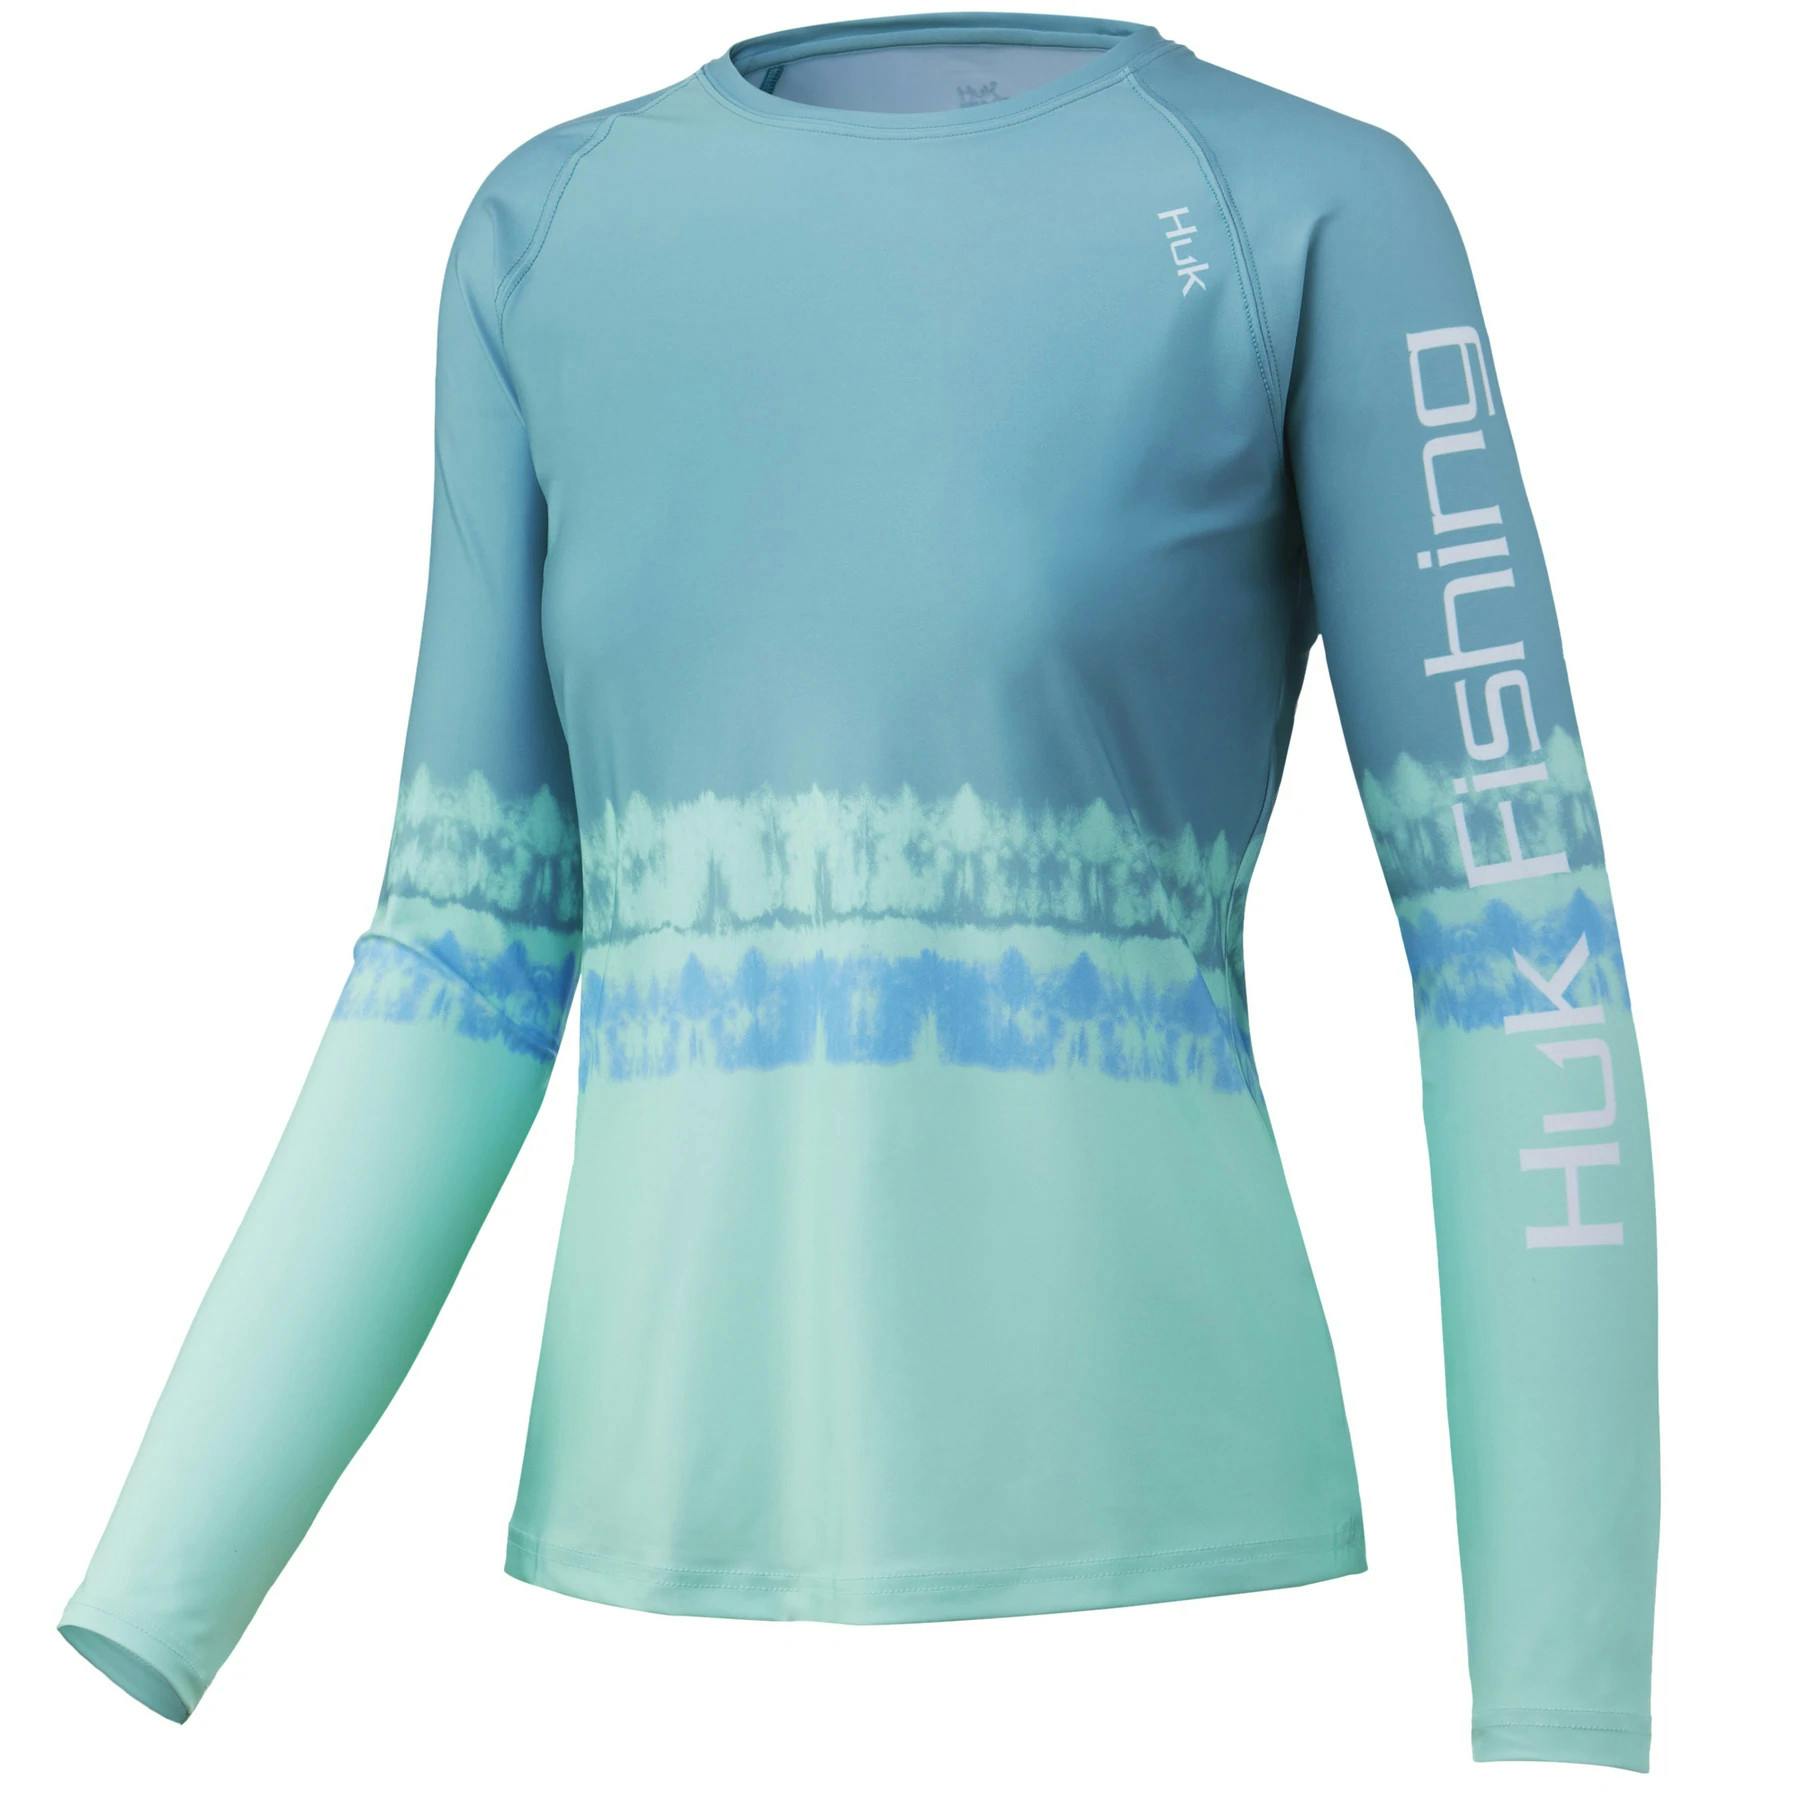 Huk Women's Salt Dye Pursuit Performance Shirt Front - Beach Glass